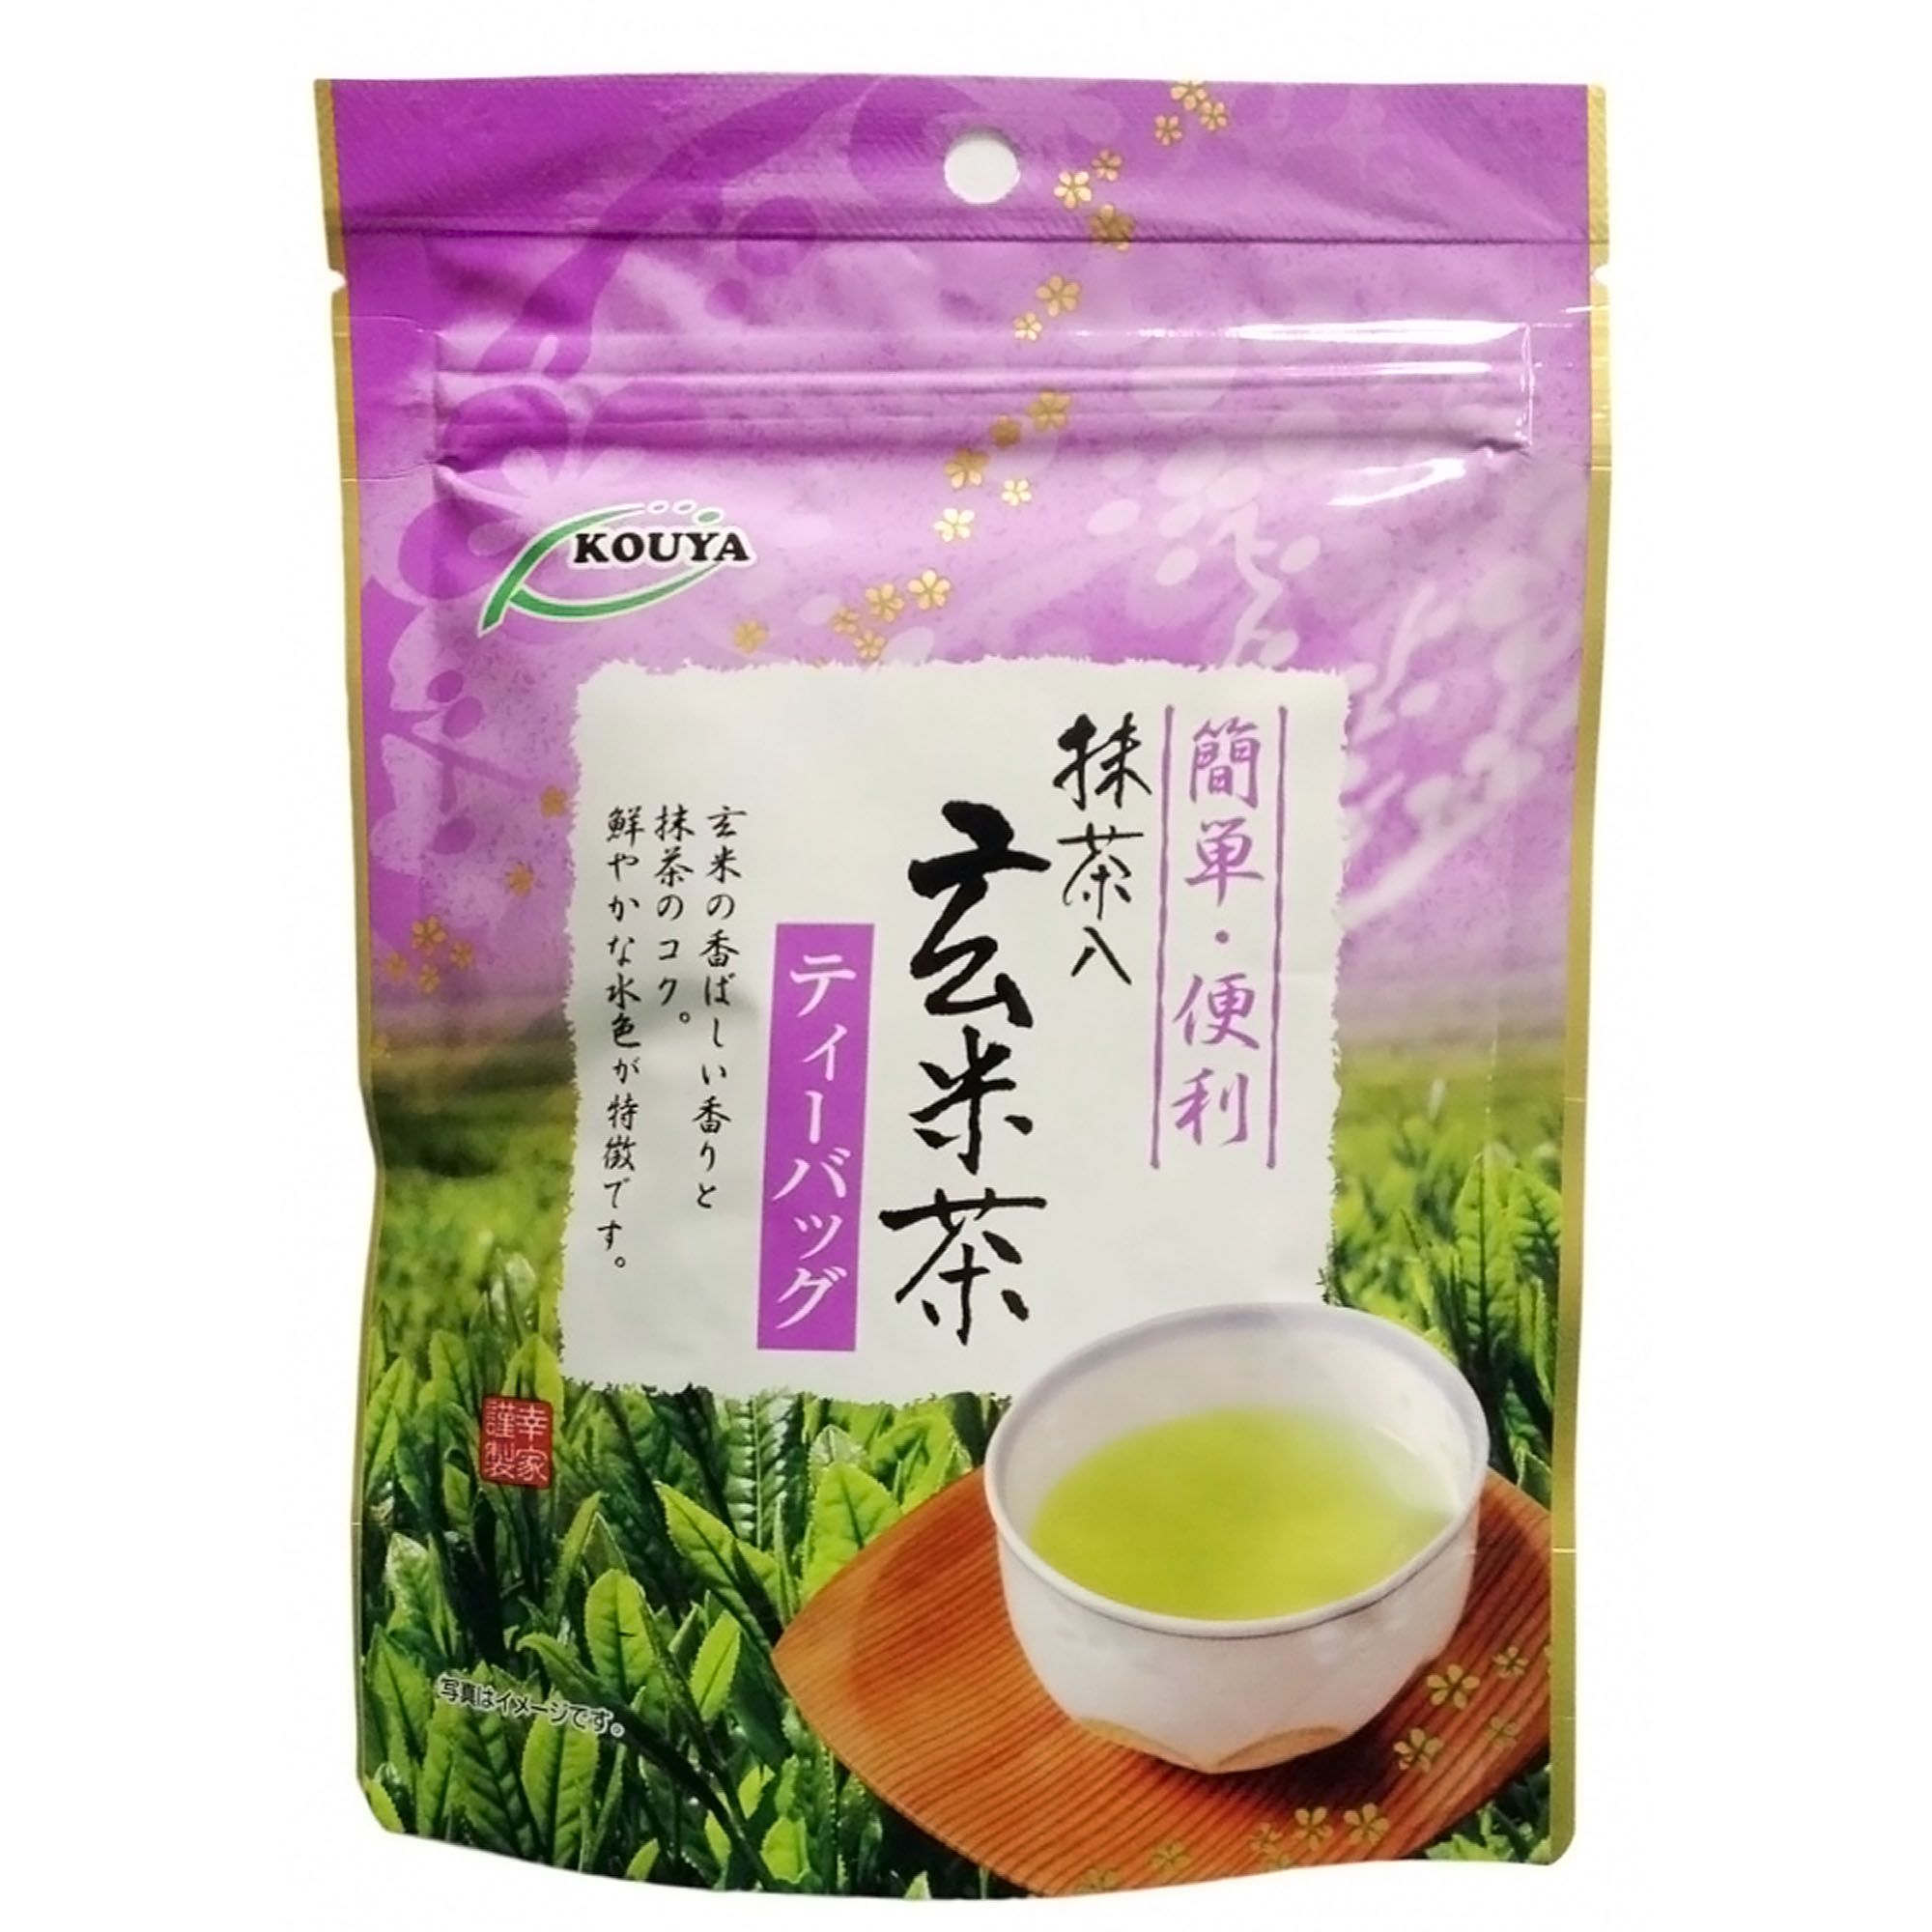 Японский чай Kouya Геммай-ча (15 шт), 30 г